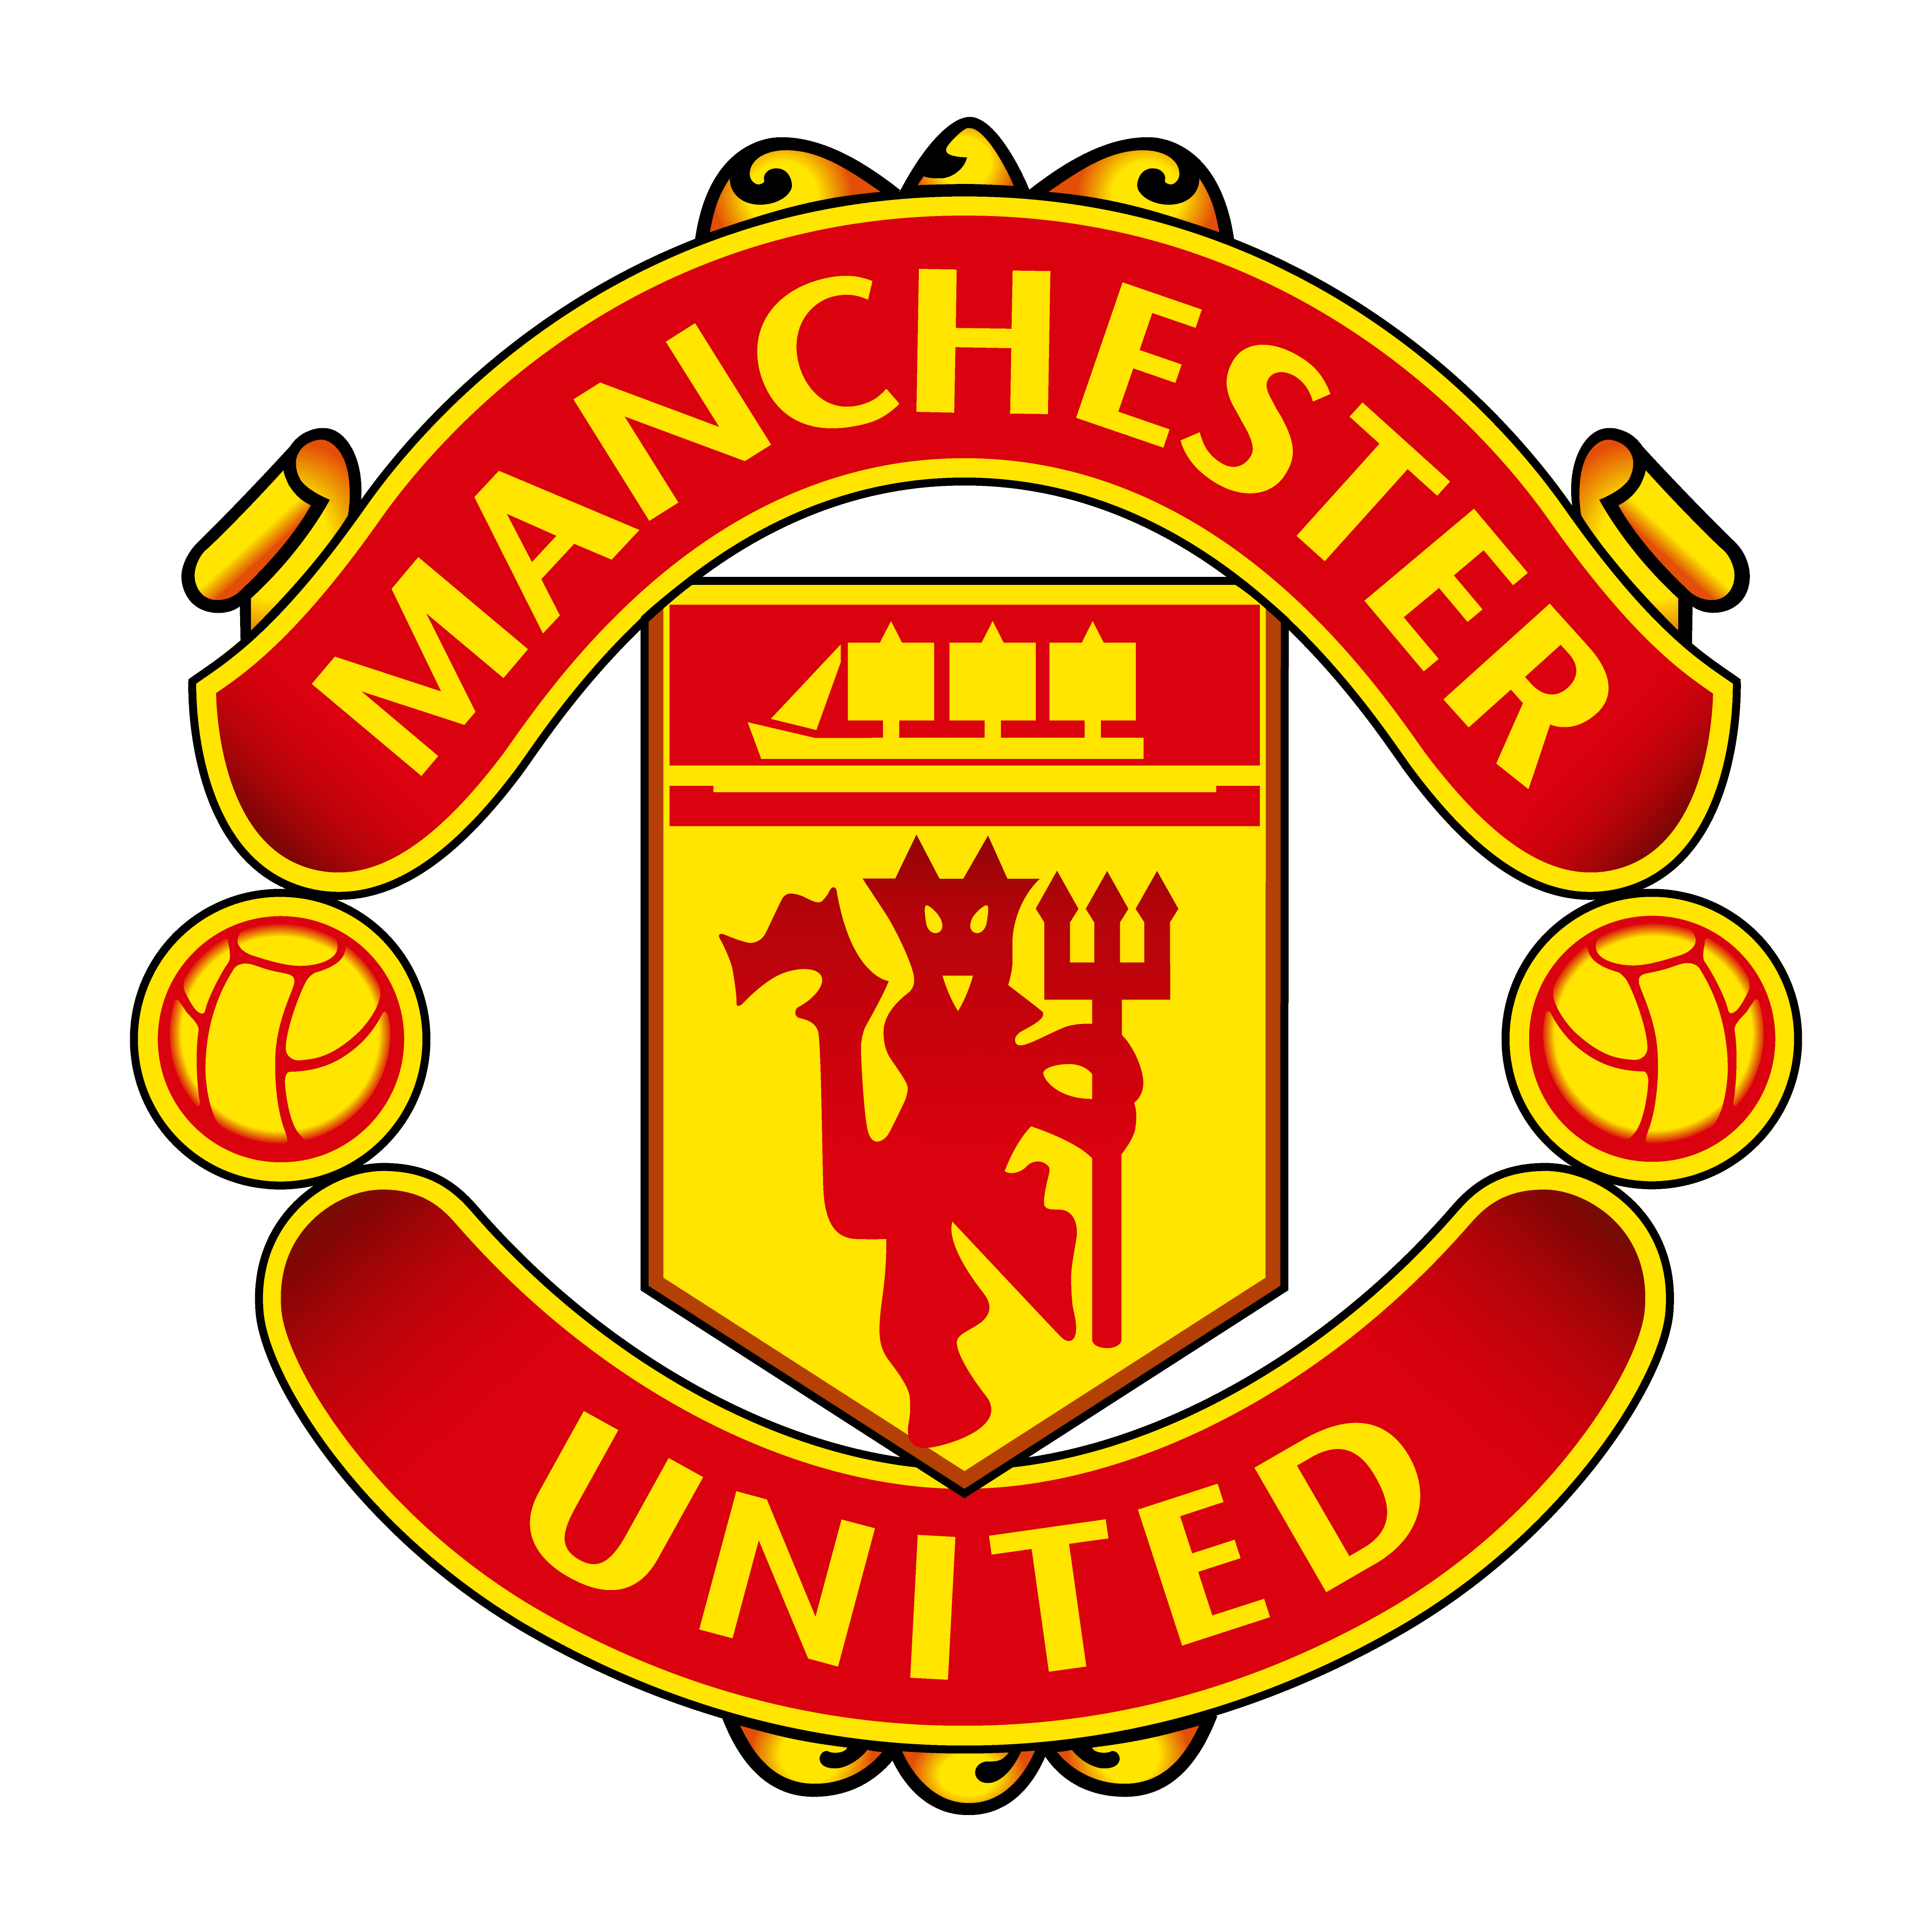 logo manchester united football club